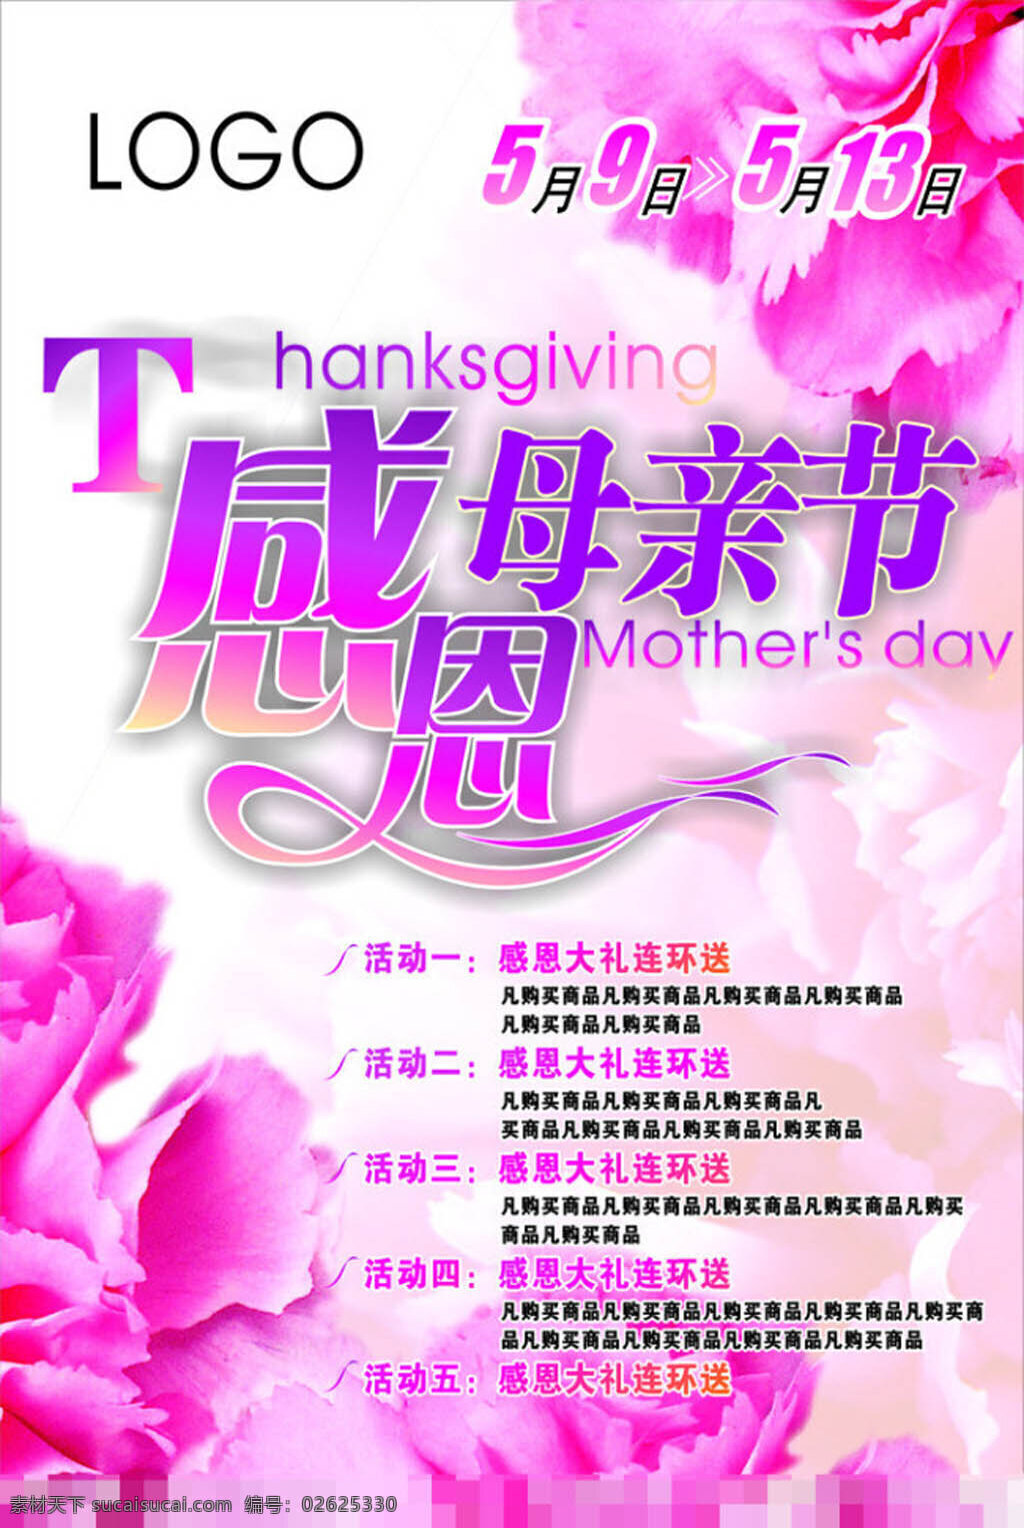 母亲节 海报 模板下载 母亲节海报 感恩节 感恩母亲节 感恩 变形 字 公司标识 粉色康乃馨 白色